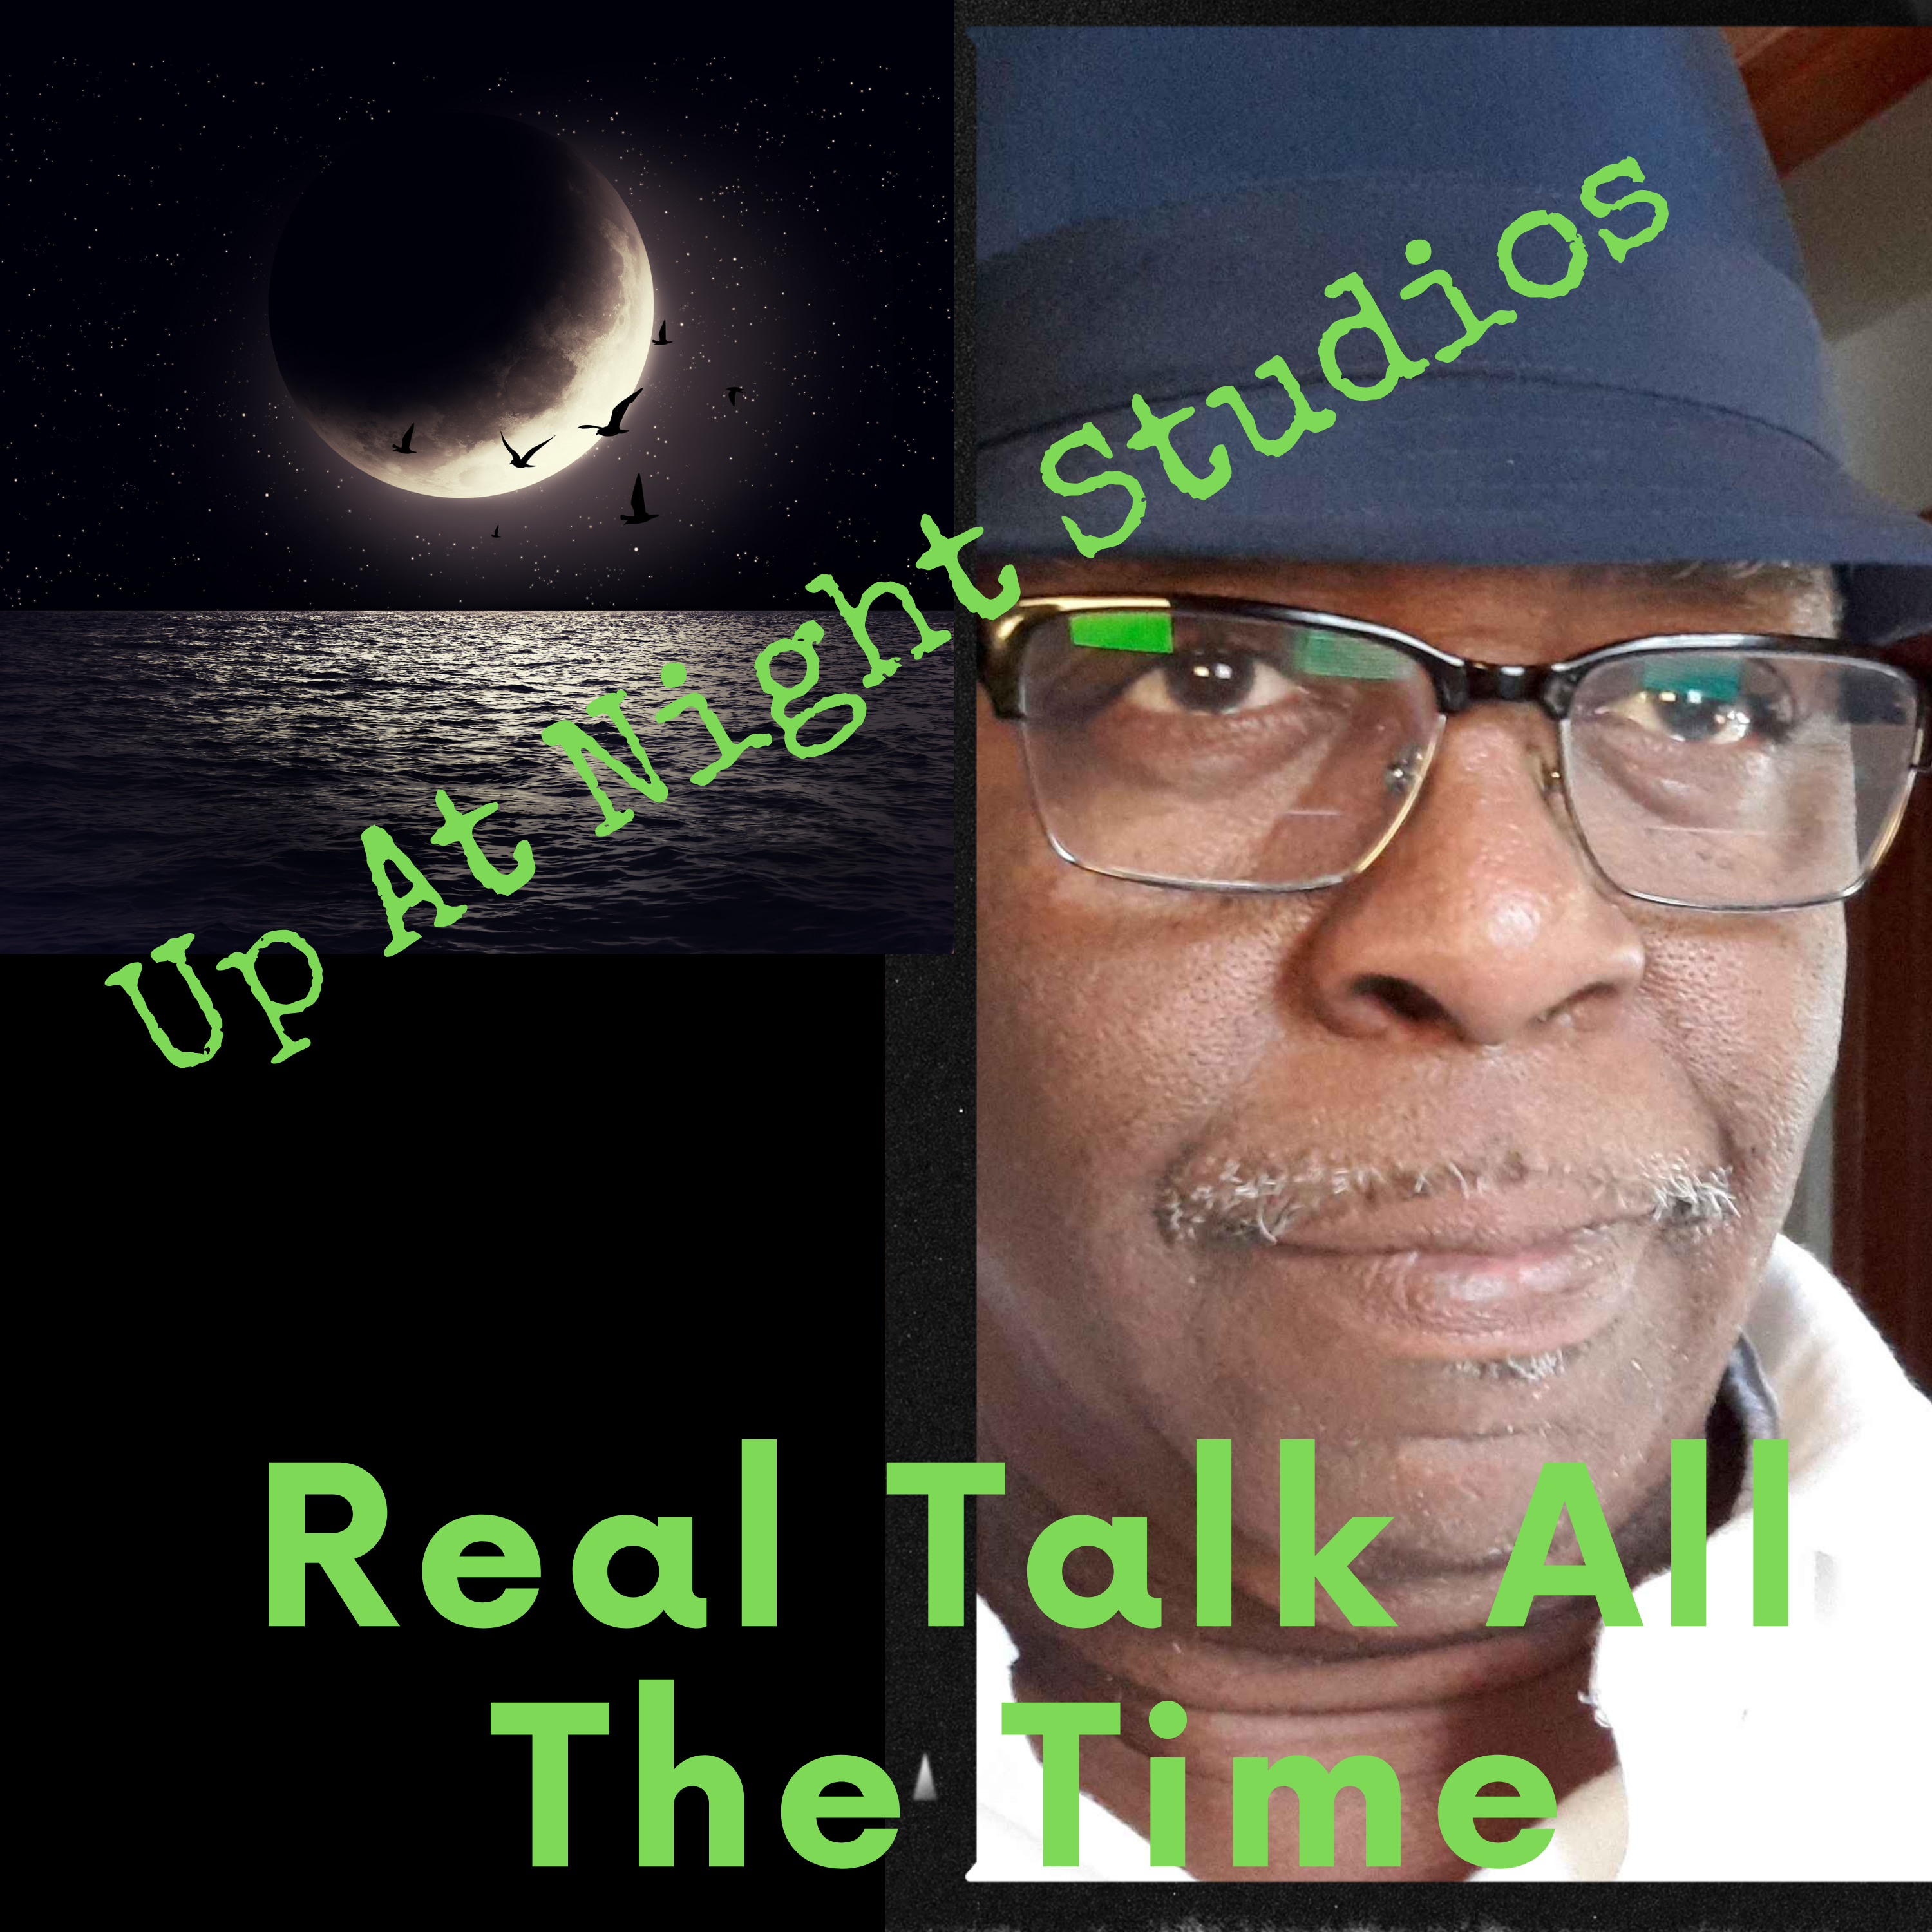 Real talk at up at night studios podcast